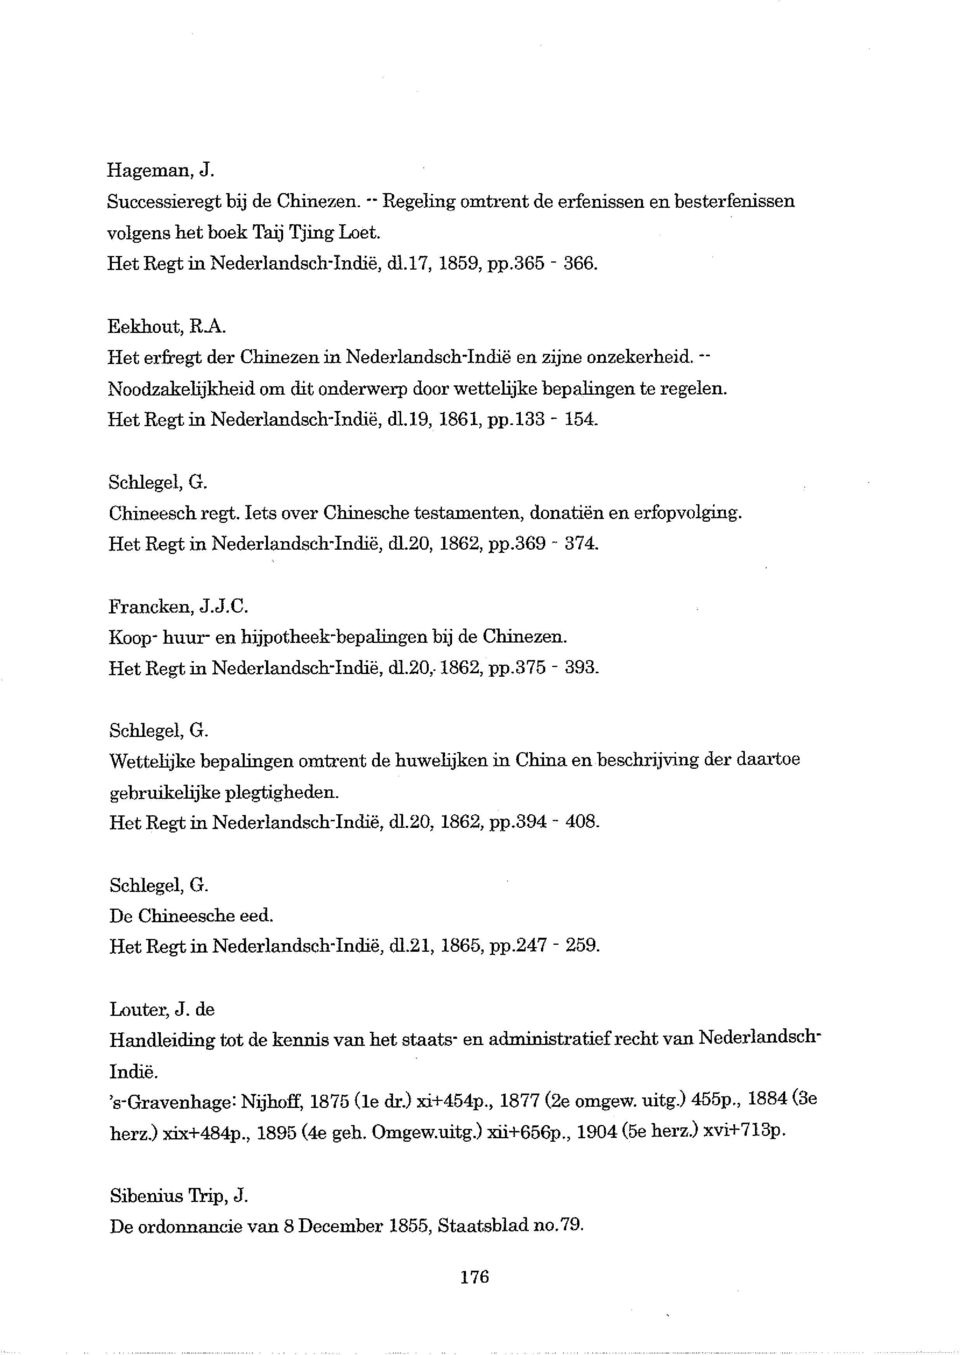 Schlegel, G. Chineesch regt. lets over Chinesche testamenten, donatien en erfopvolging. Het Regt in Nederlandsch-Indie, dl.20, 1862, pp.369-374. Francken, J.J.C. Koop huur- en hijpotheek-bepalingen bij de Chinezen.